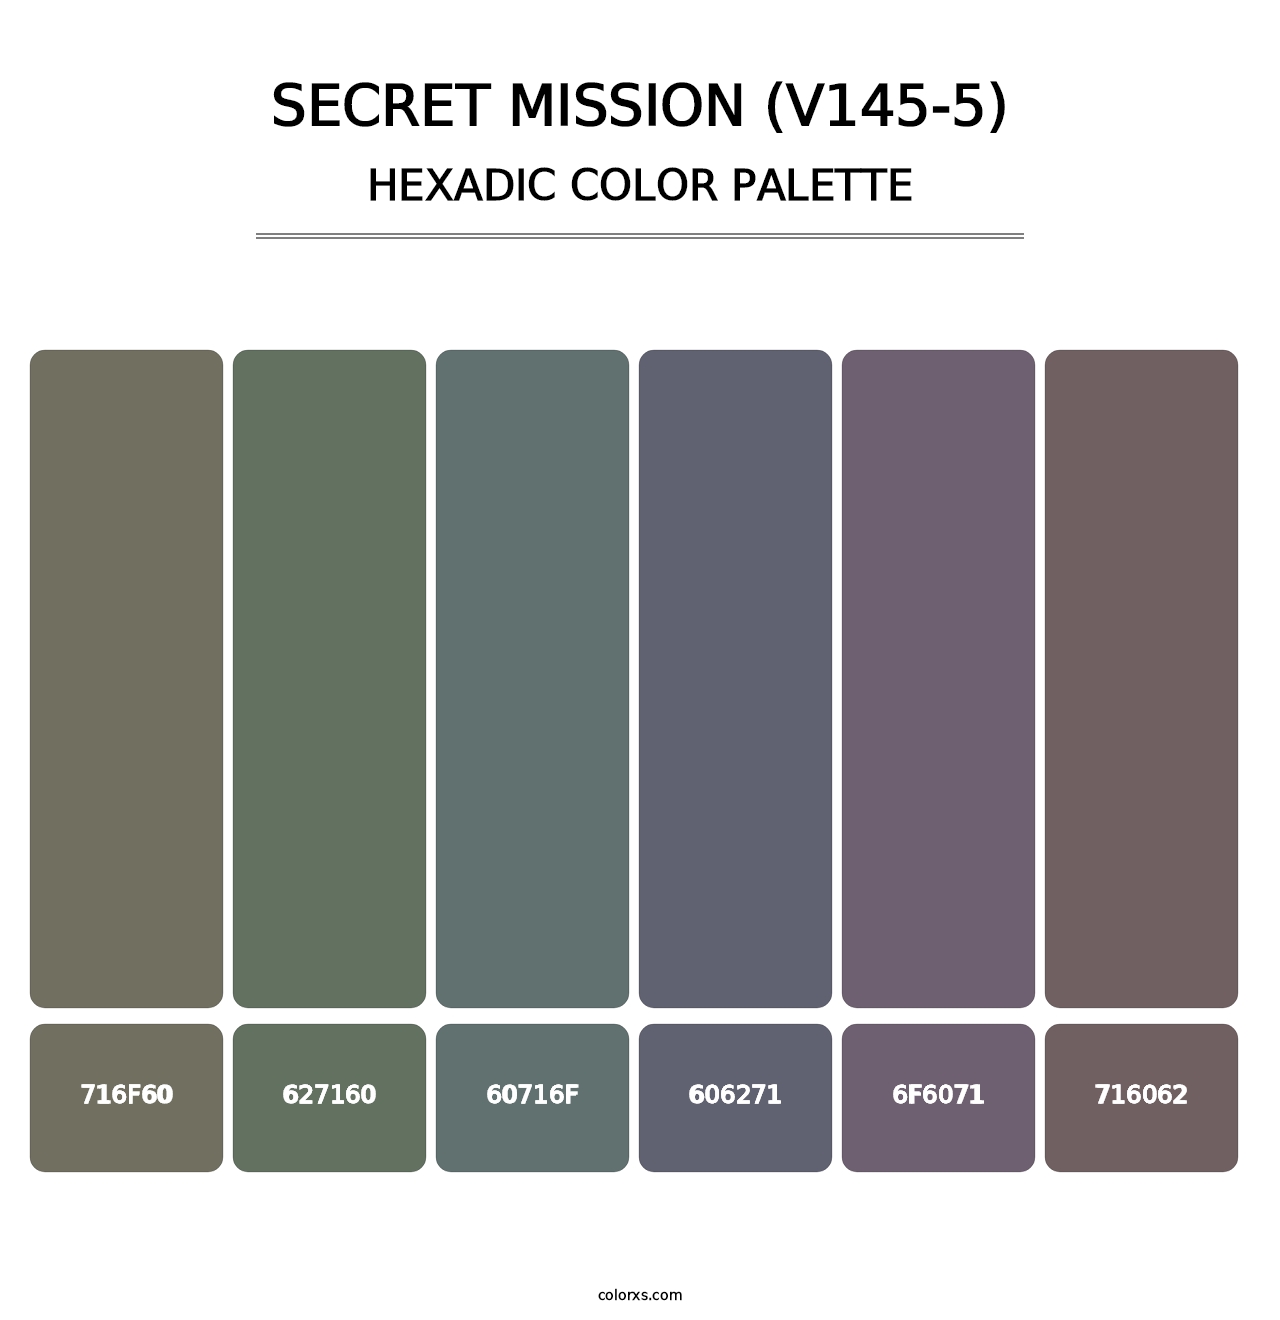 Secret Mission (V145-5) - Hexadic Color Palette